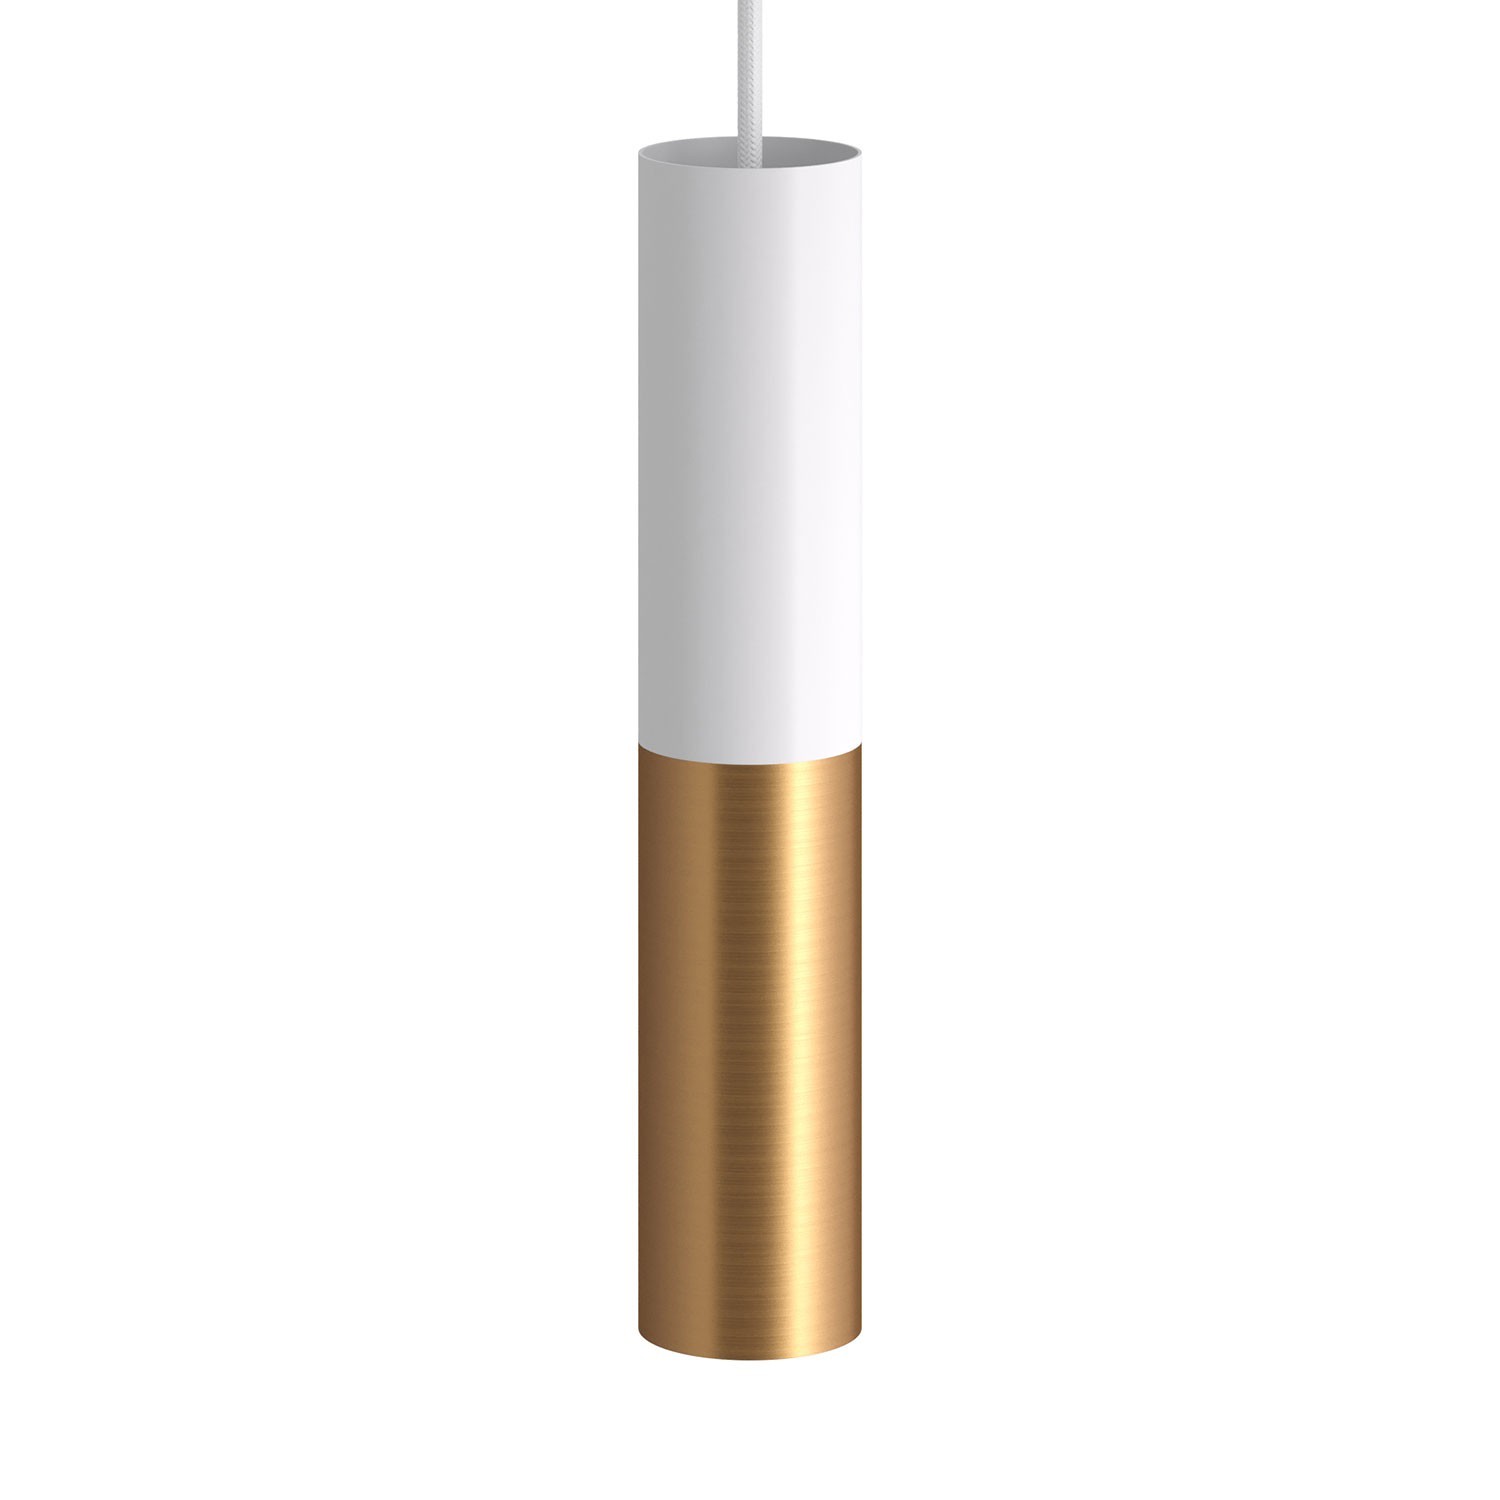 Made in Italy hanglamp compleet met strijkijzersnoer en dubbele Tub-E14 lampenkap